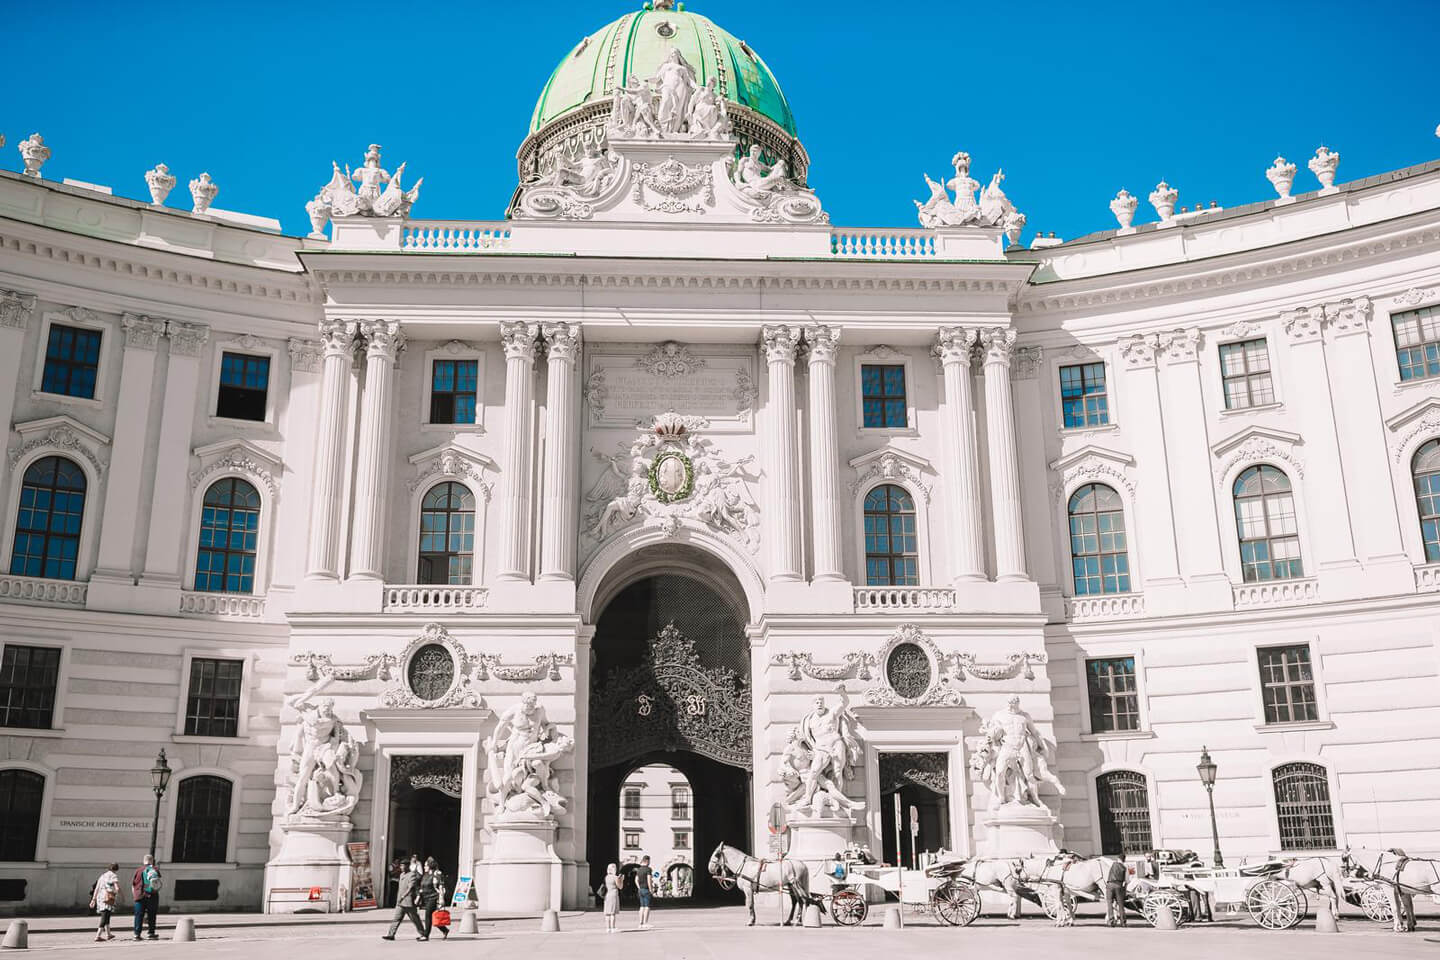 #2 Alte Hofburg in Vienna